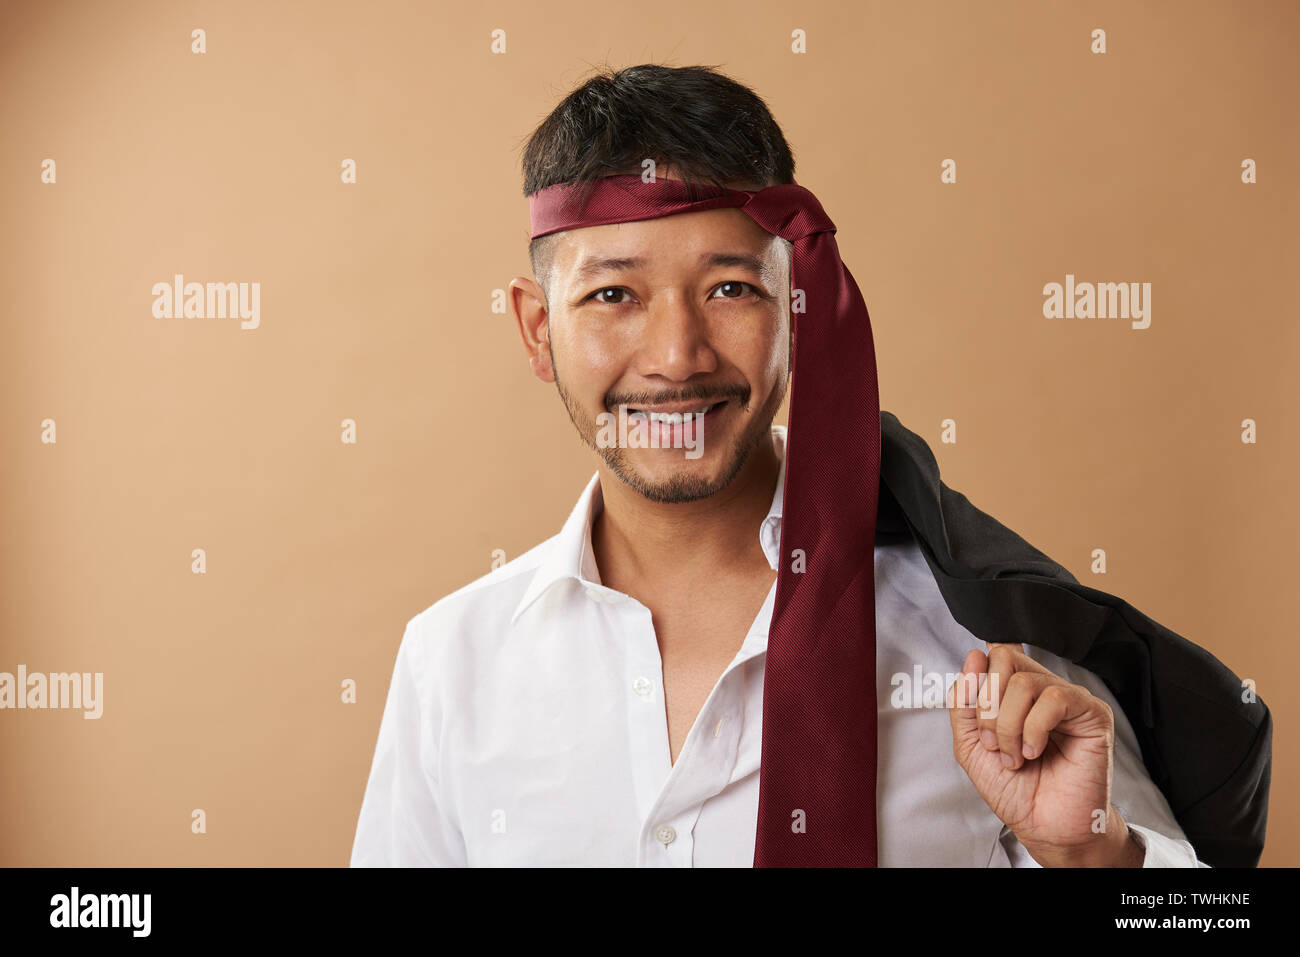 Happy asian office worker avec cravate sur tête portrait Banque D'Images